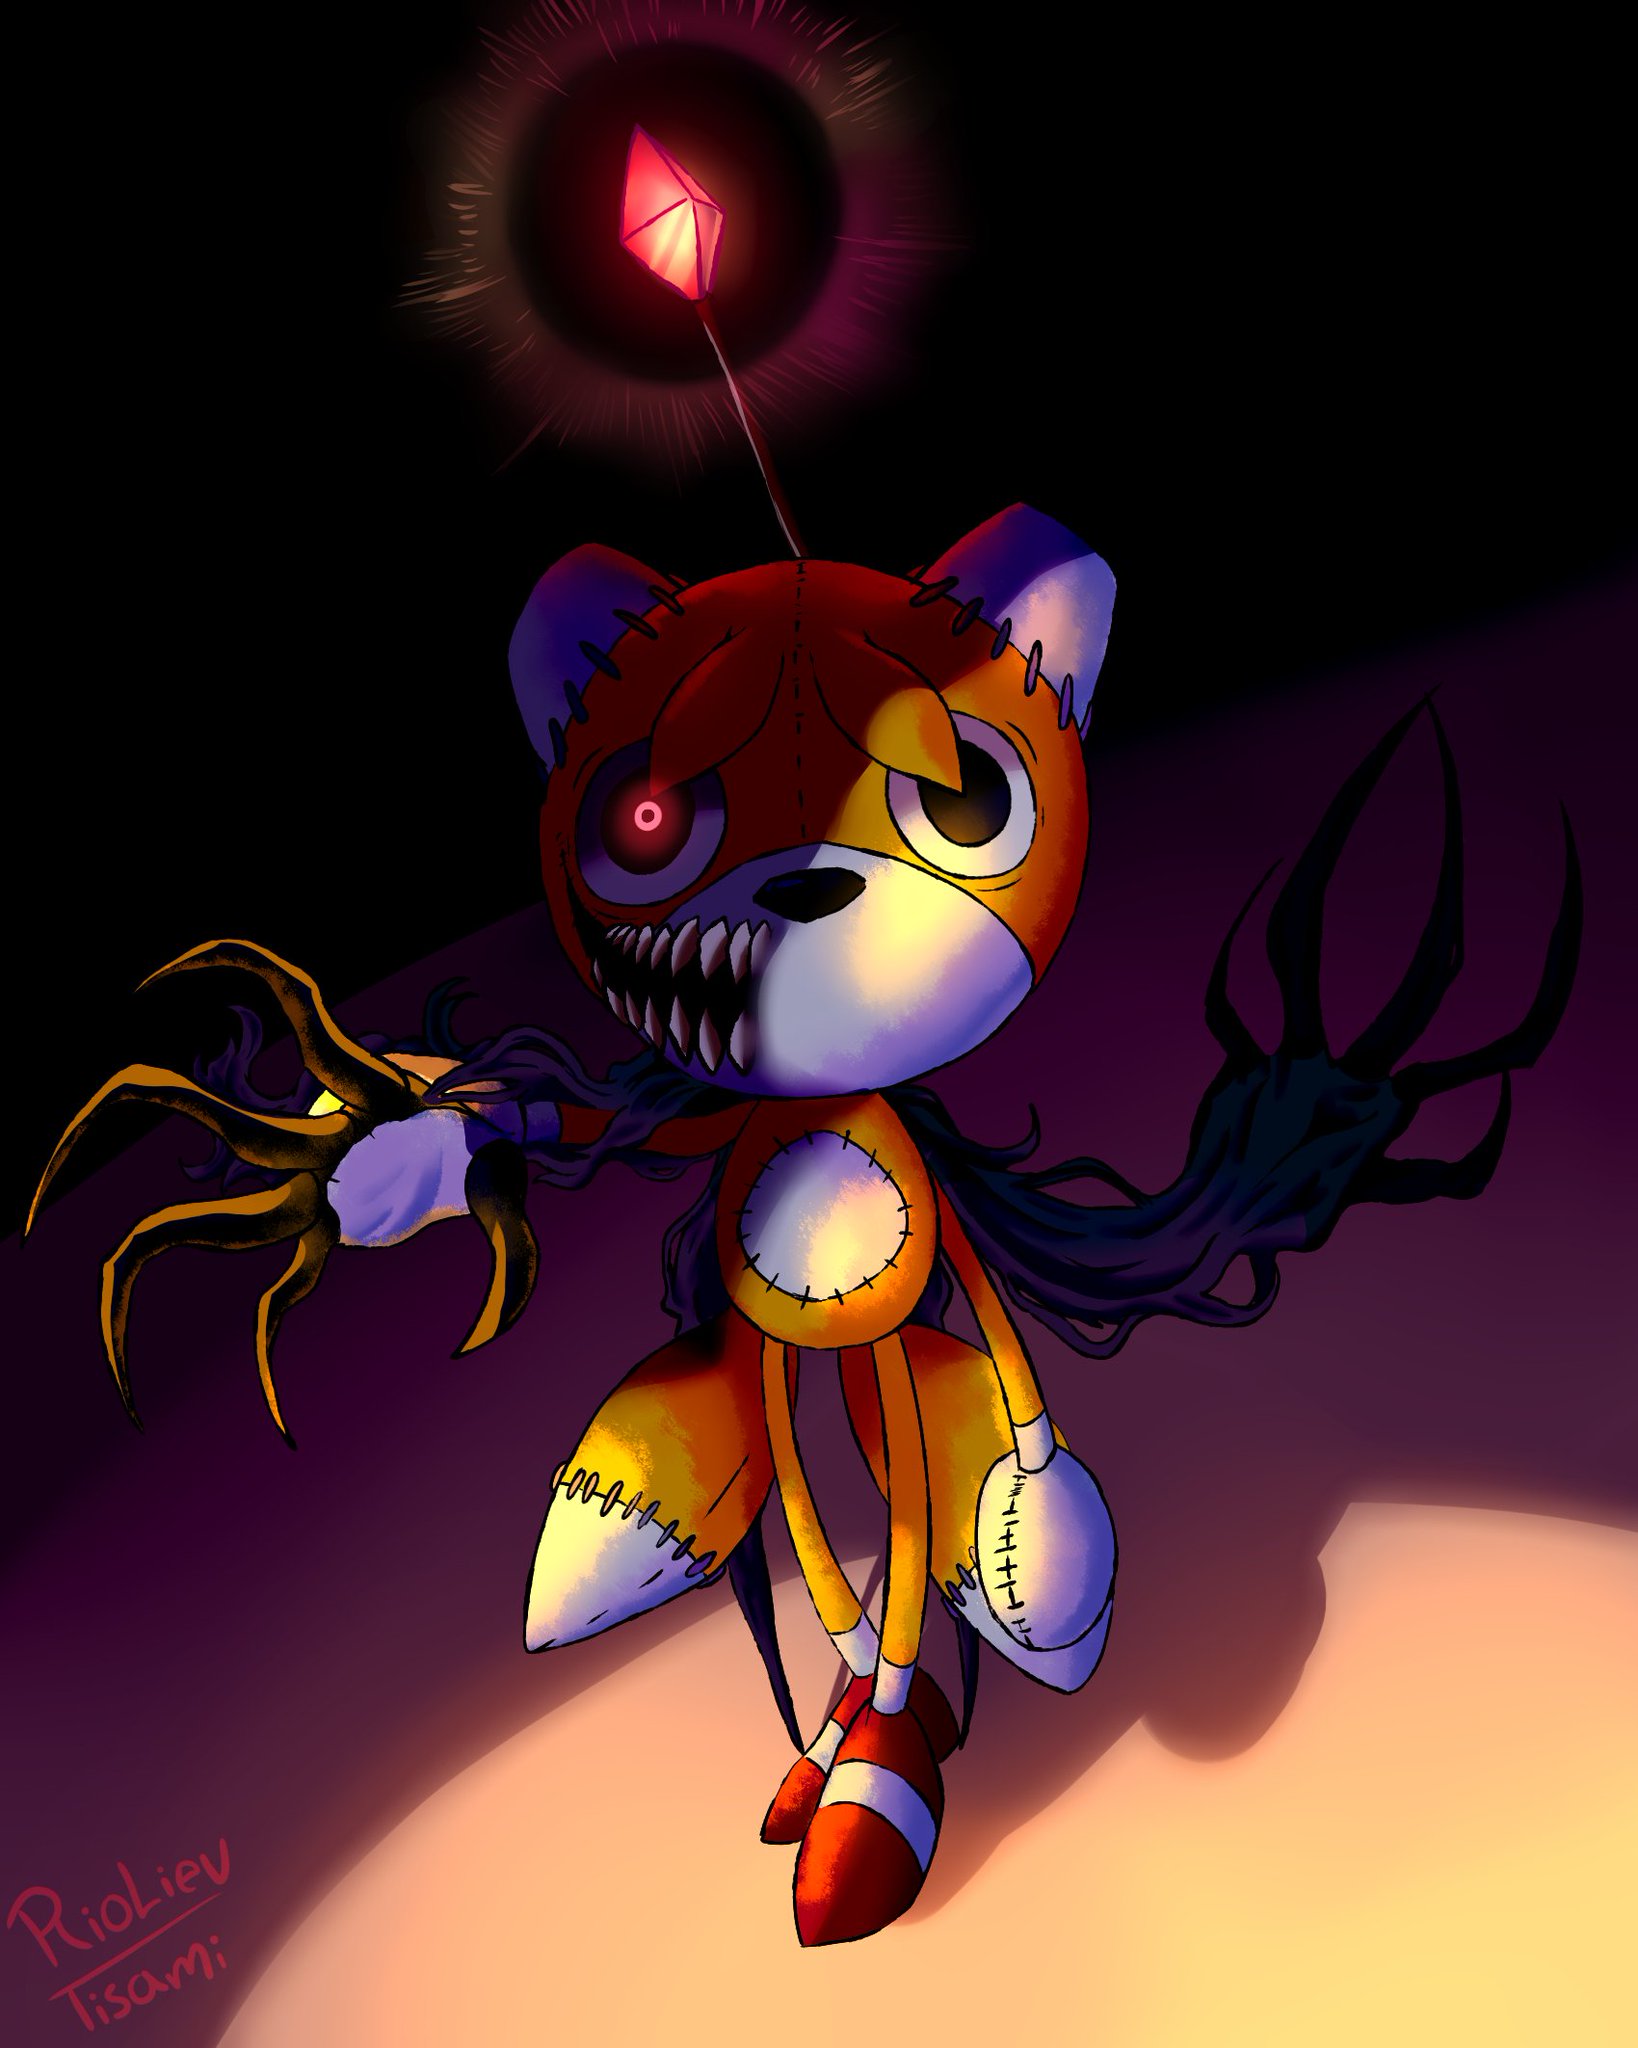 SpeedPaint 24: Tails Doll / Sonic's Creepypasta 